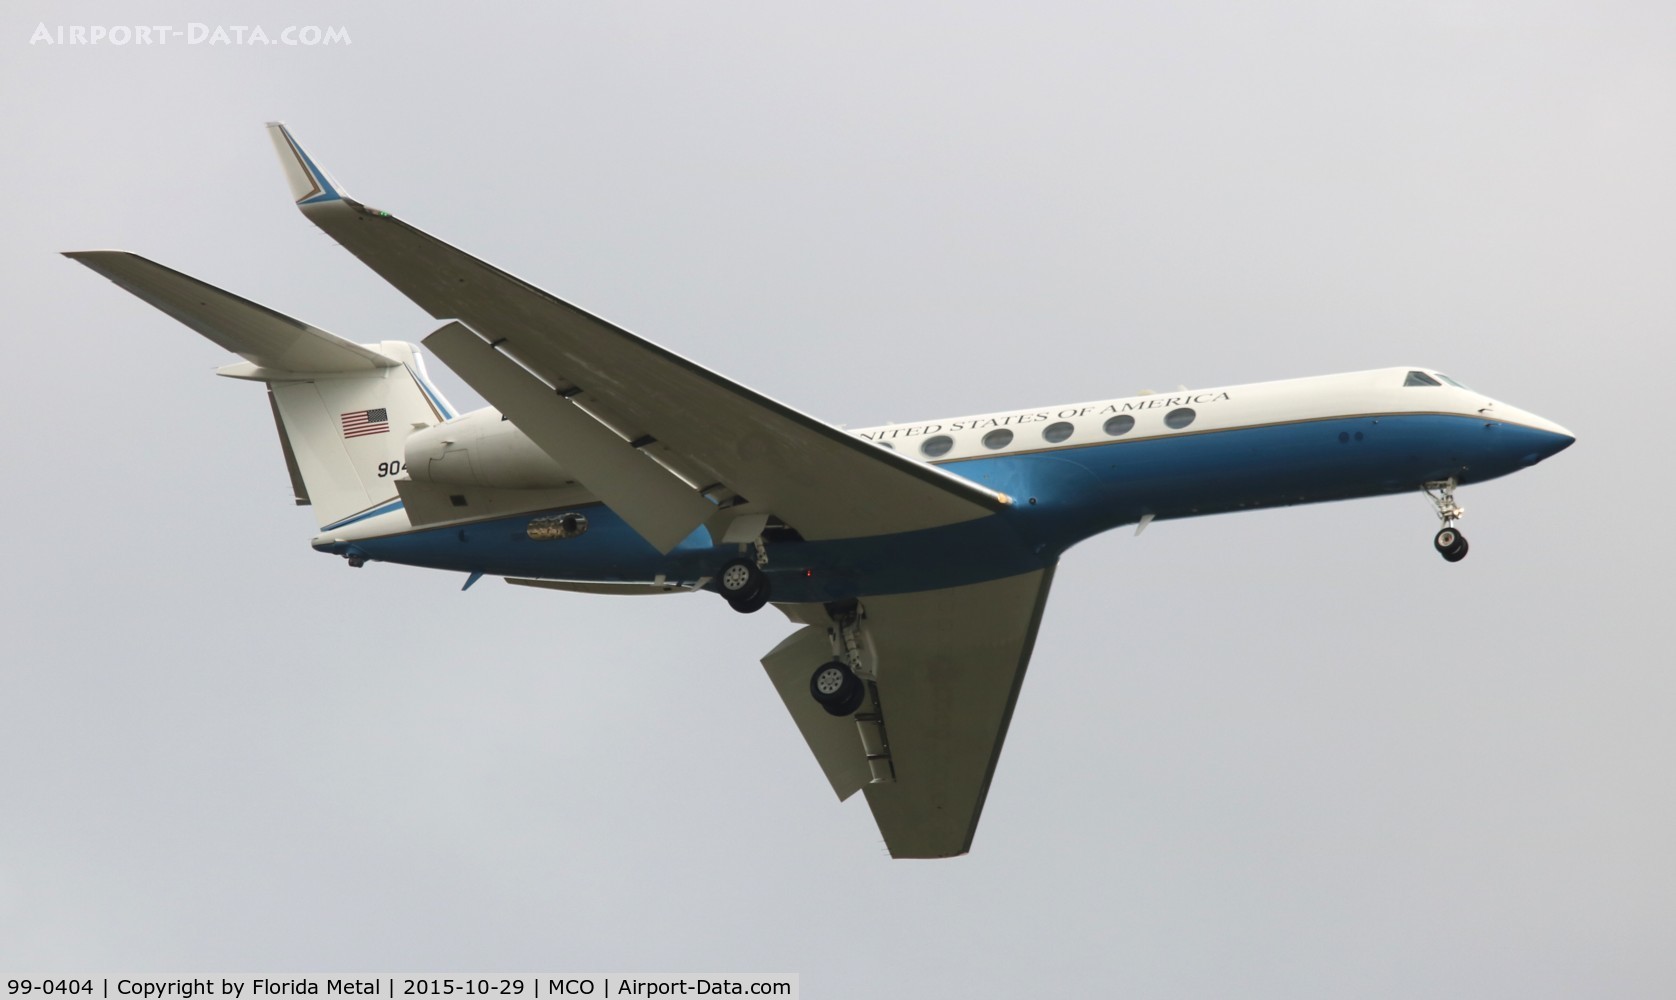 99-0404, 1999 Gulfstream Aerospace C-37A (Gulfstream V) C/N 590, C-37A